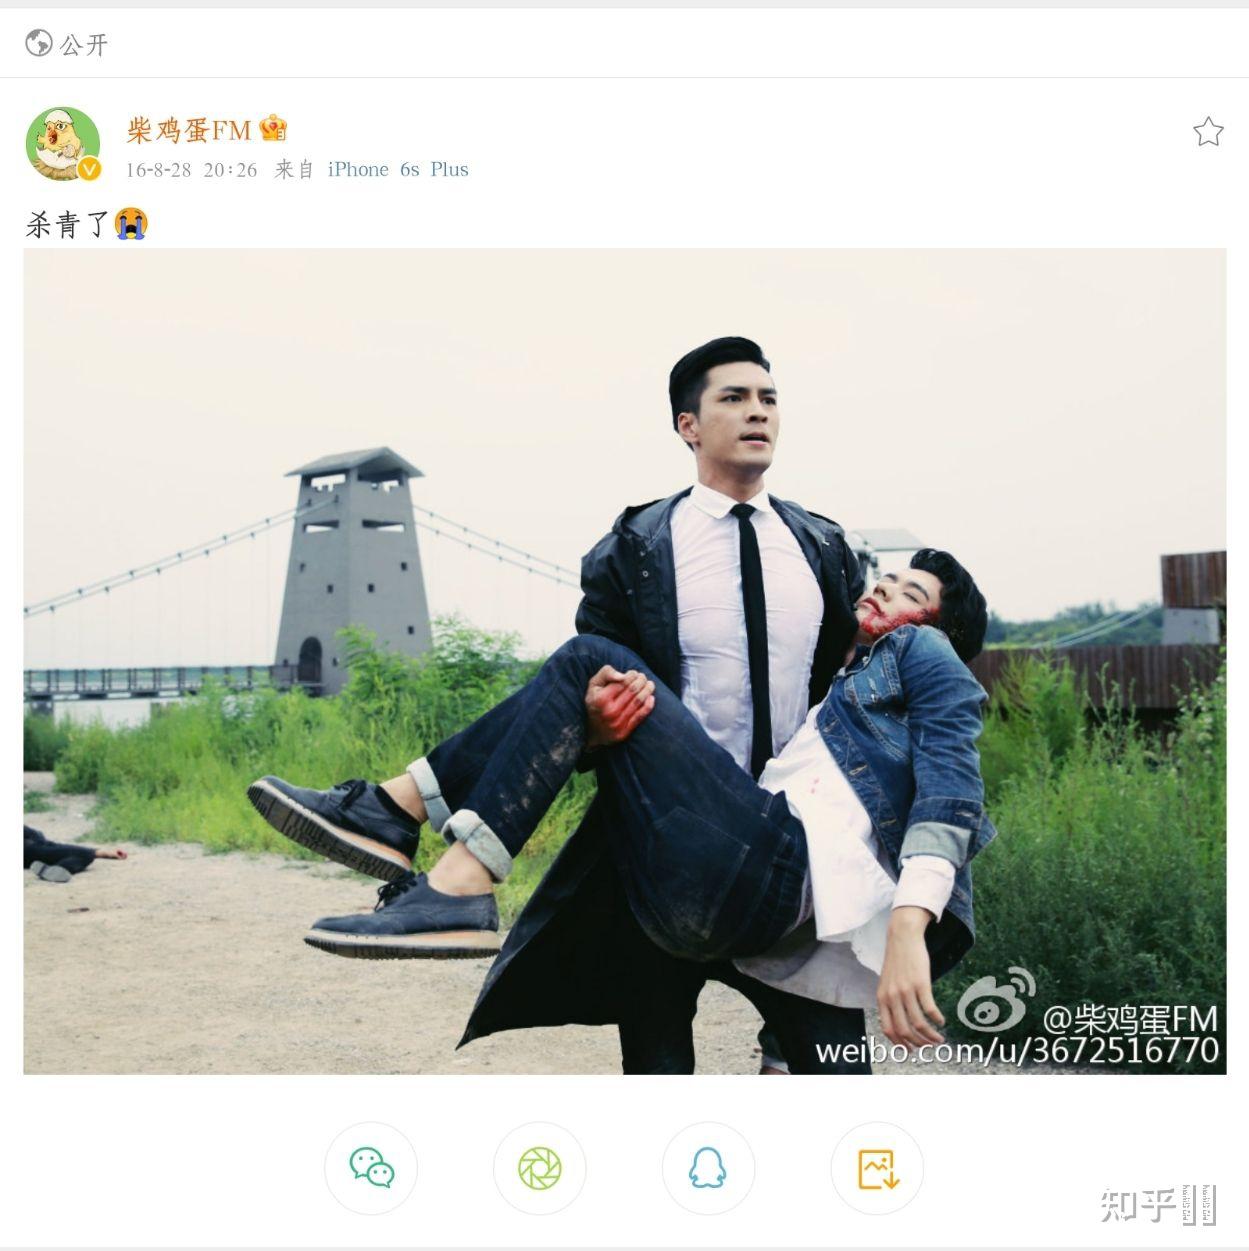 龚俊和徐峰的微博名真的是情侣名吗